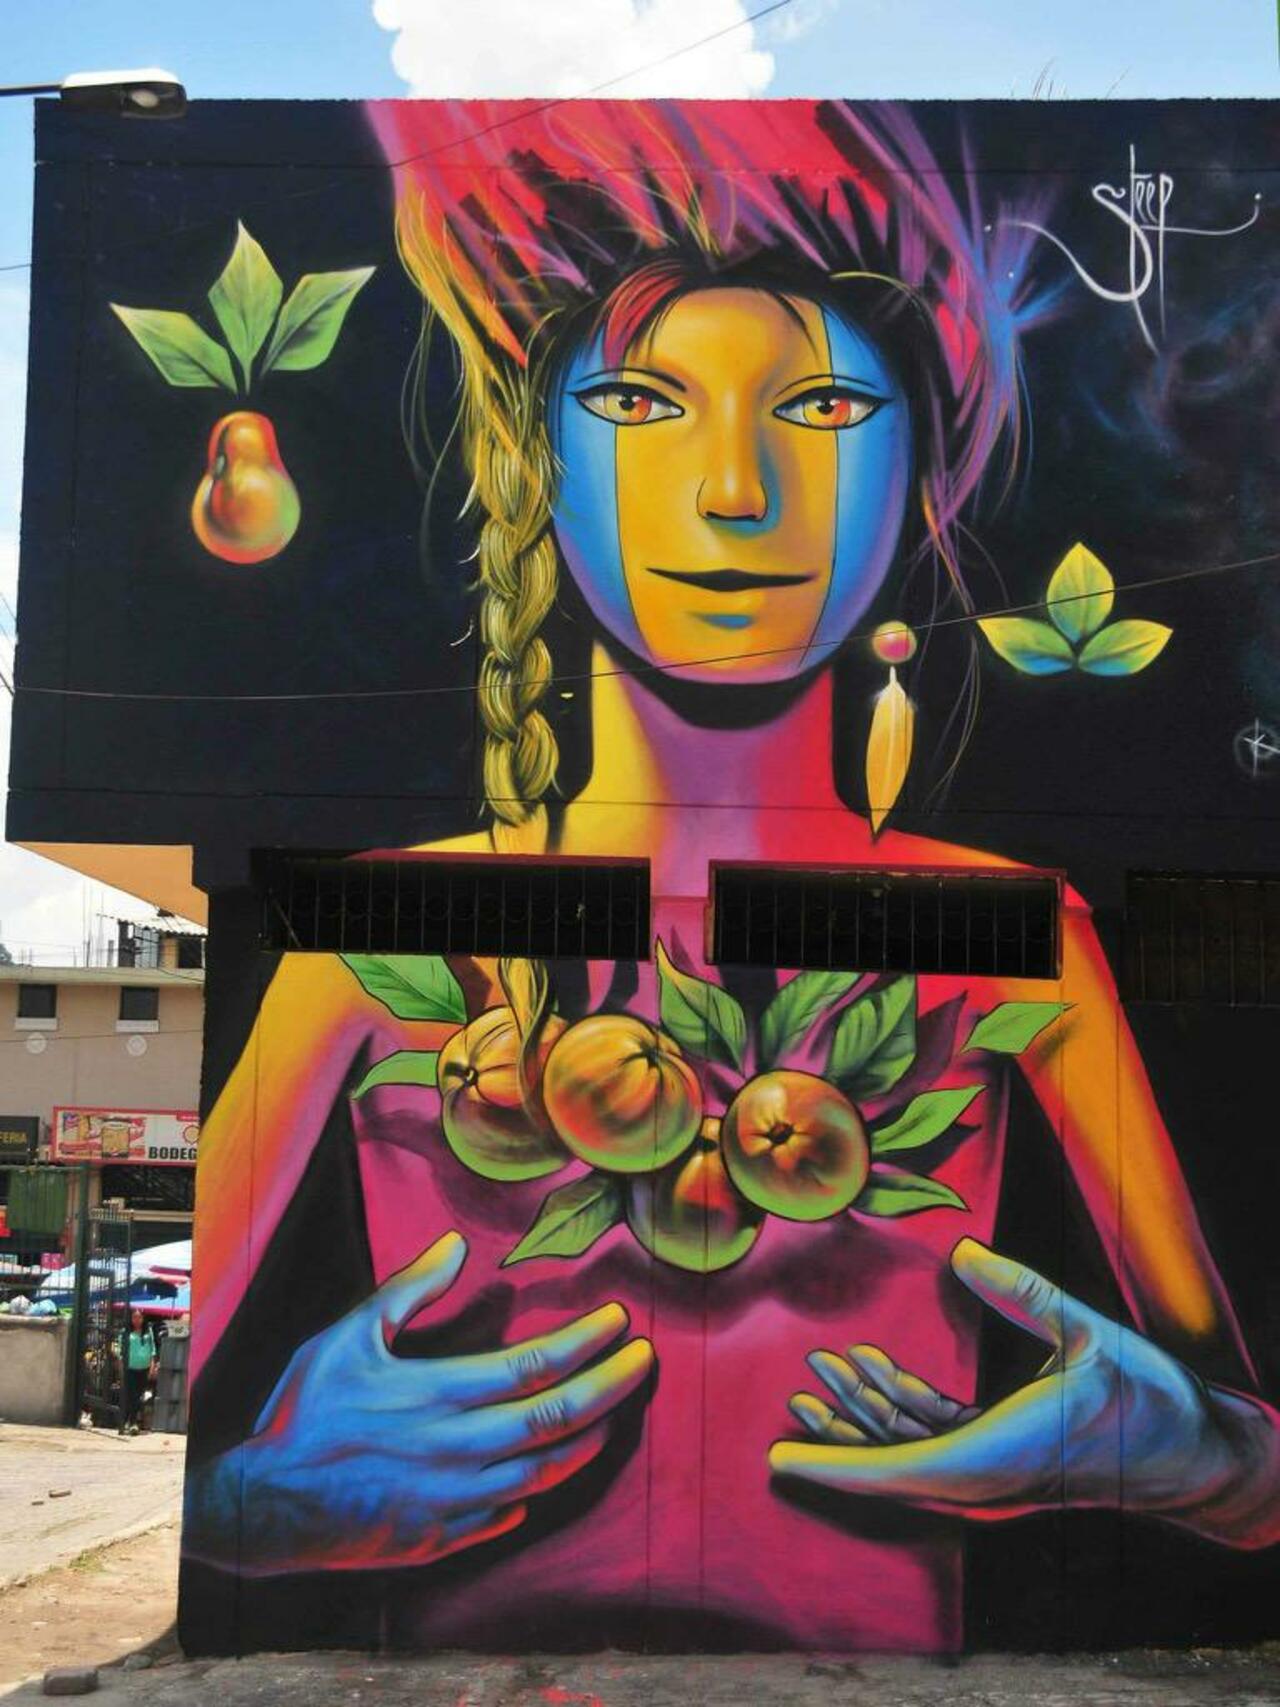 Street Art by Steep

#art #graffiti #mural #streetart http://t.co/dKGIfl0HiR